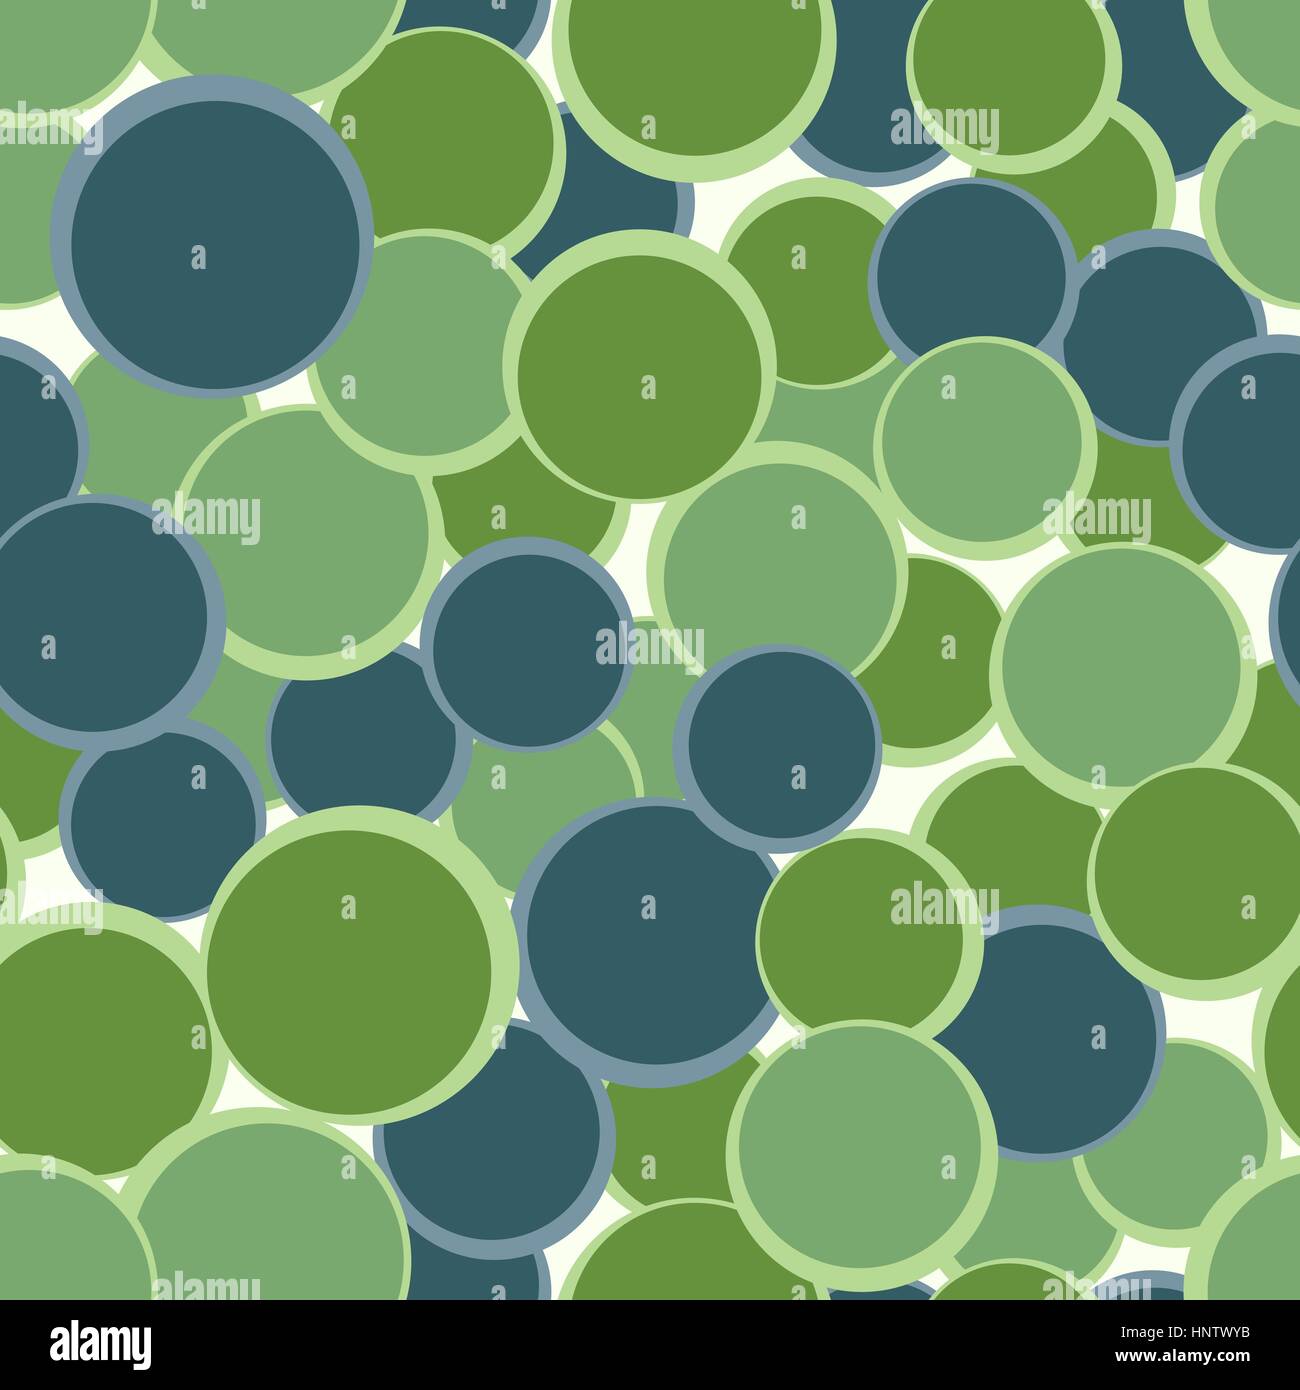 Grün, blau Kreise Musterdesign. Abstrakten dekorativen Hintergrund. Vektor-Illustration. Geometrische Element Kulisse. Stock Vektor